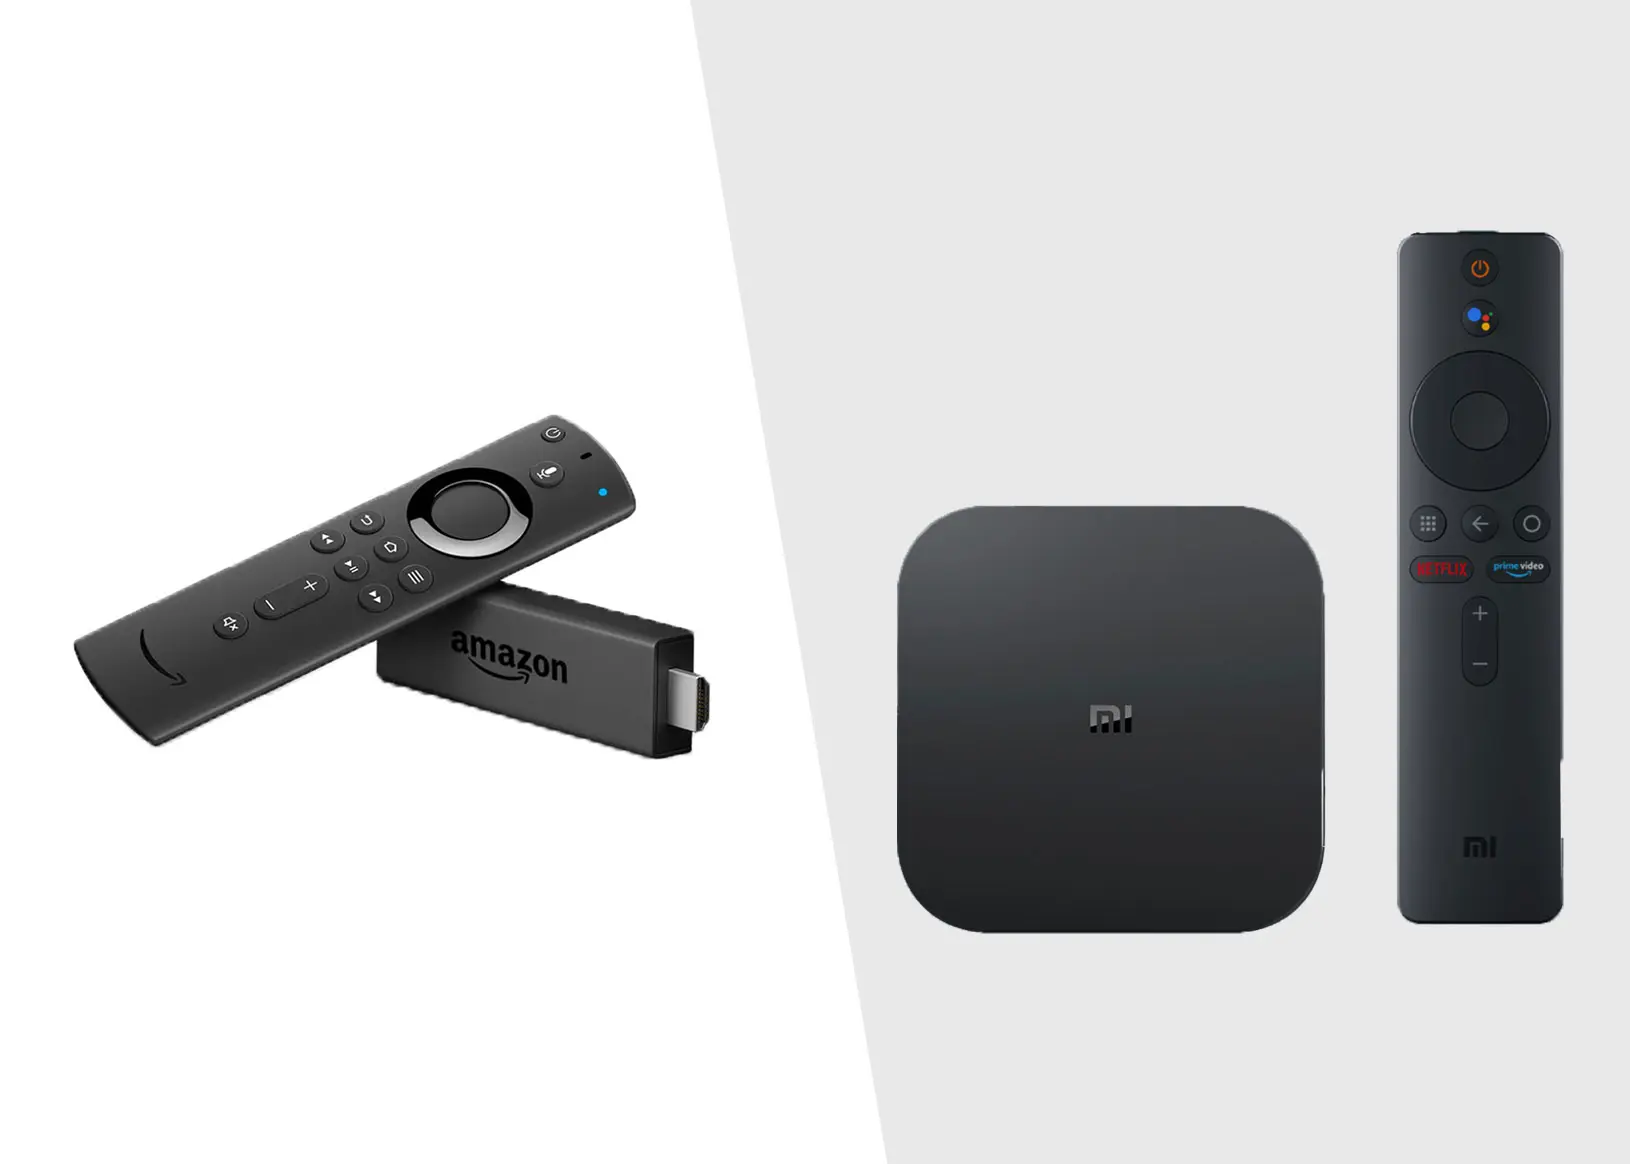 Amazon Fire TV Stick vs Android TV Box